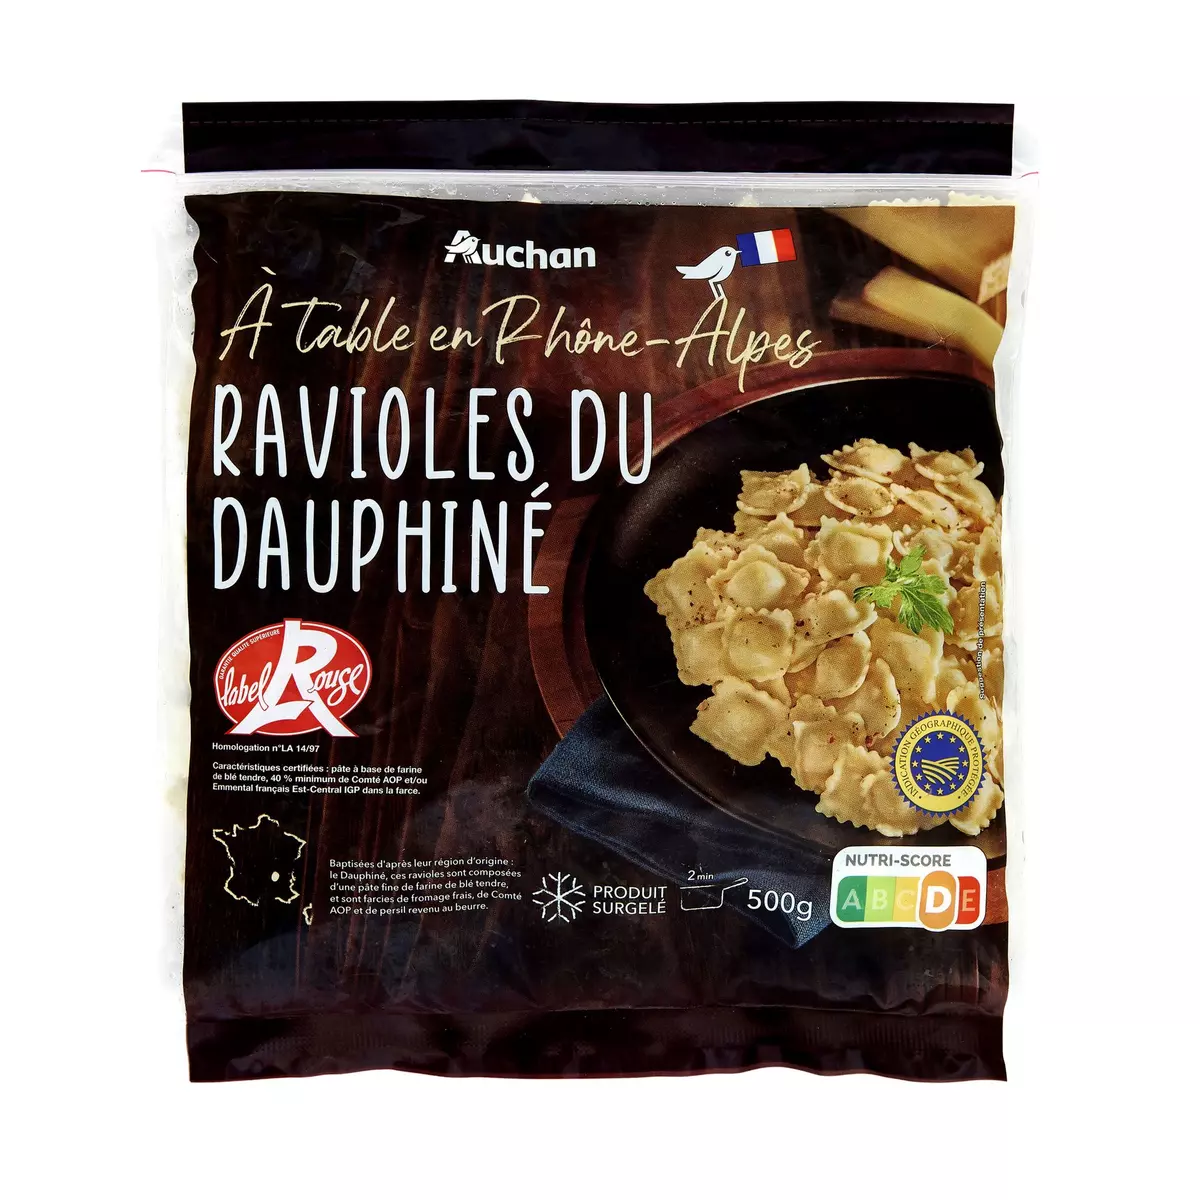 AUCHAN TERROIR Ravioles du Dauphiné IGP label rouge 500g